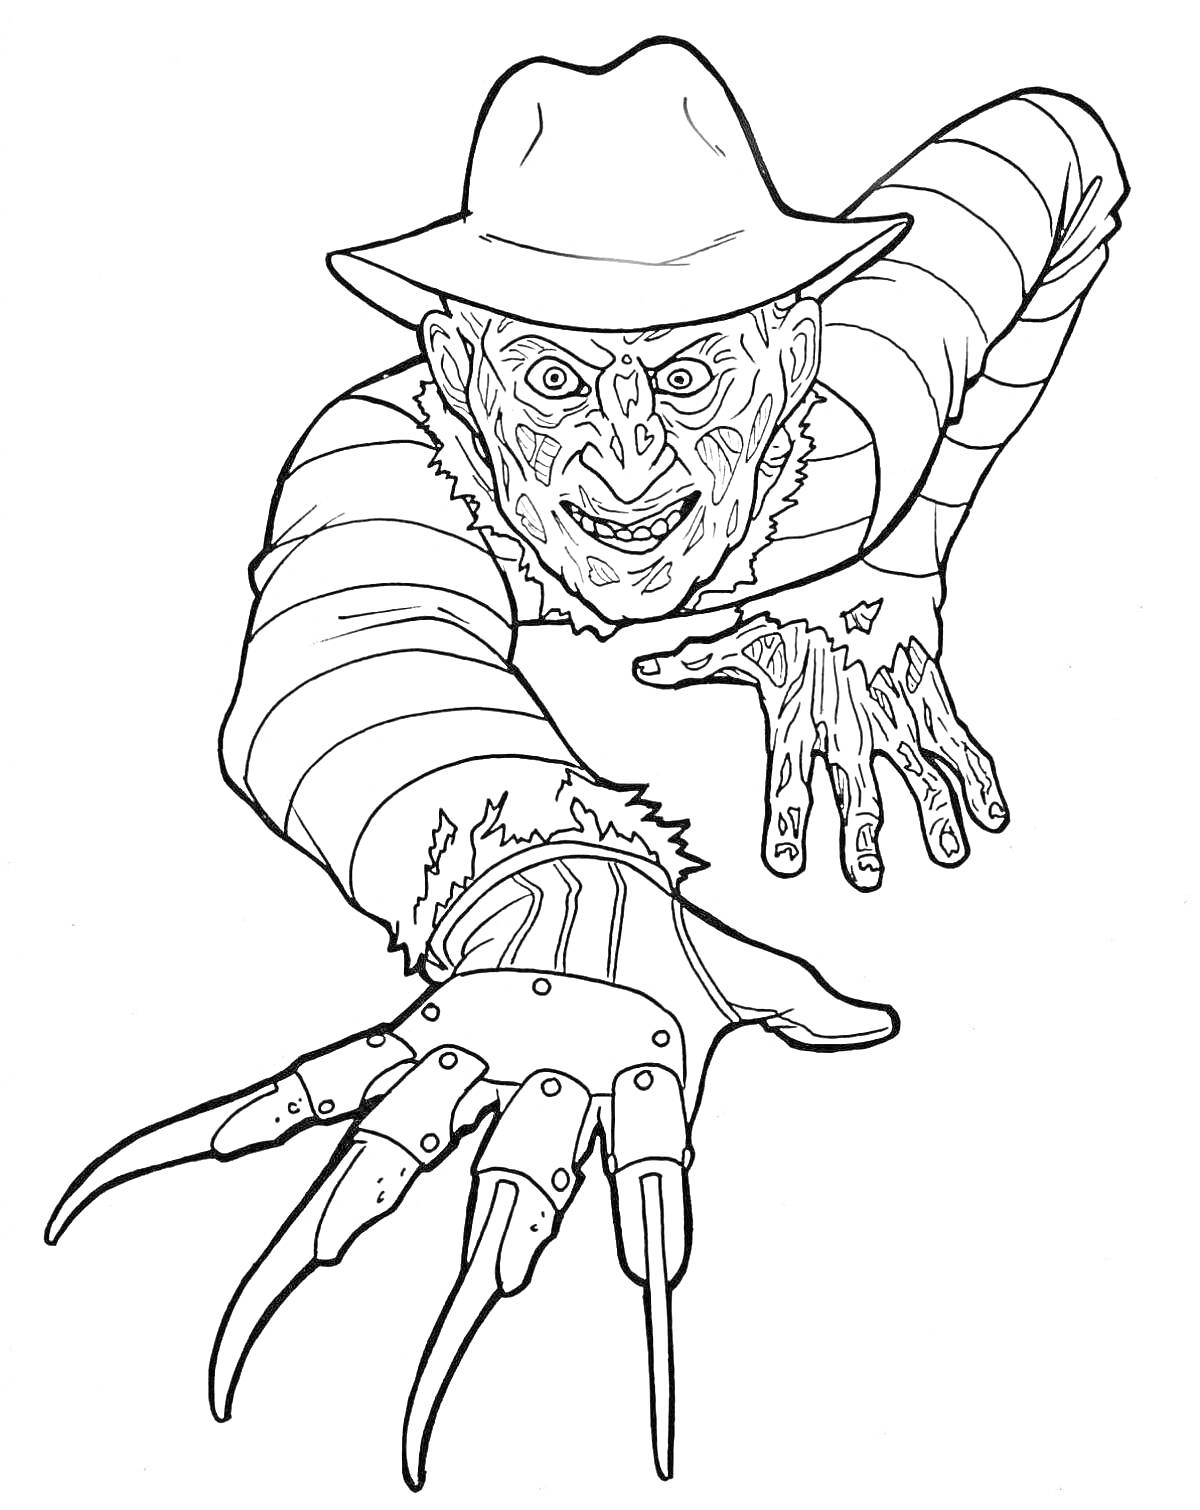 Раскраска Злобный человек в шляпе с ожогами на лице и длинными лезвиями на руке